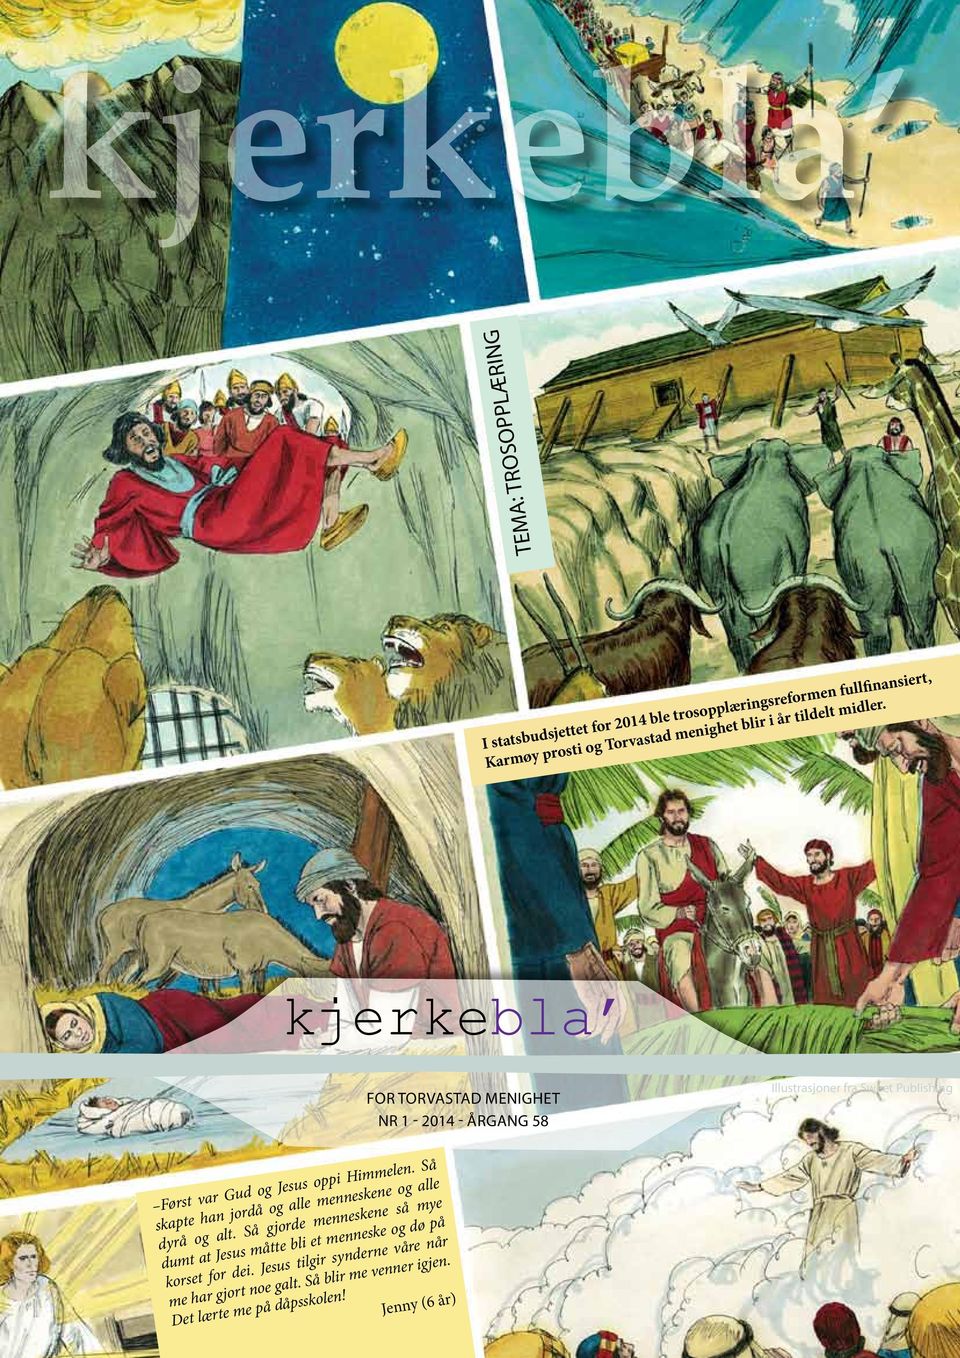 kjerkebla For Torvastad menighet Nr 1-2014 - Årgang 58 Illustrasjoner fra Sweet Publishing Først var Gud og Jesus oppi Himmelen.